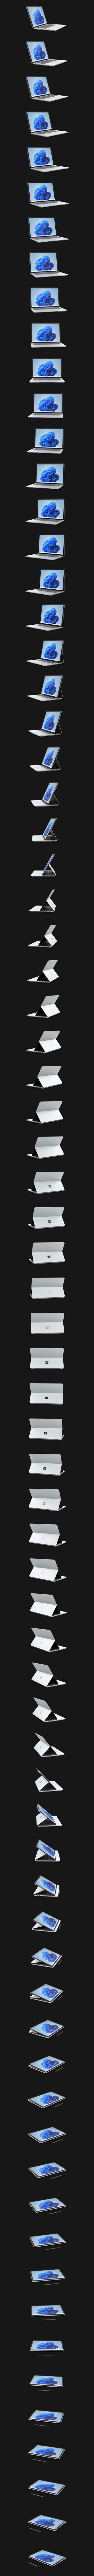 Surface Laptop Studio que gira 360 grados.